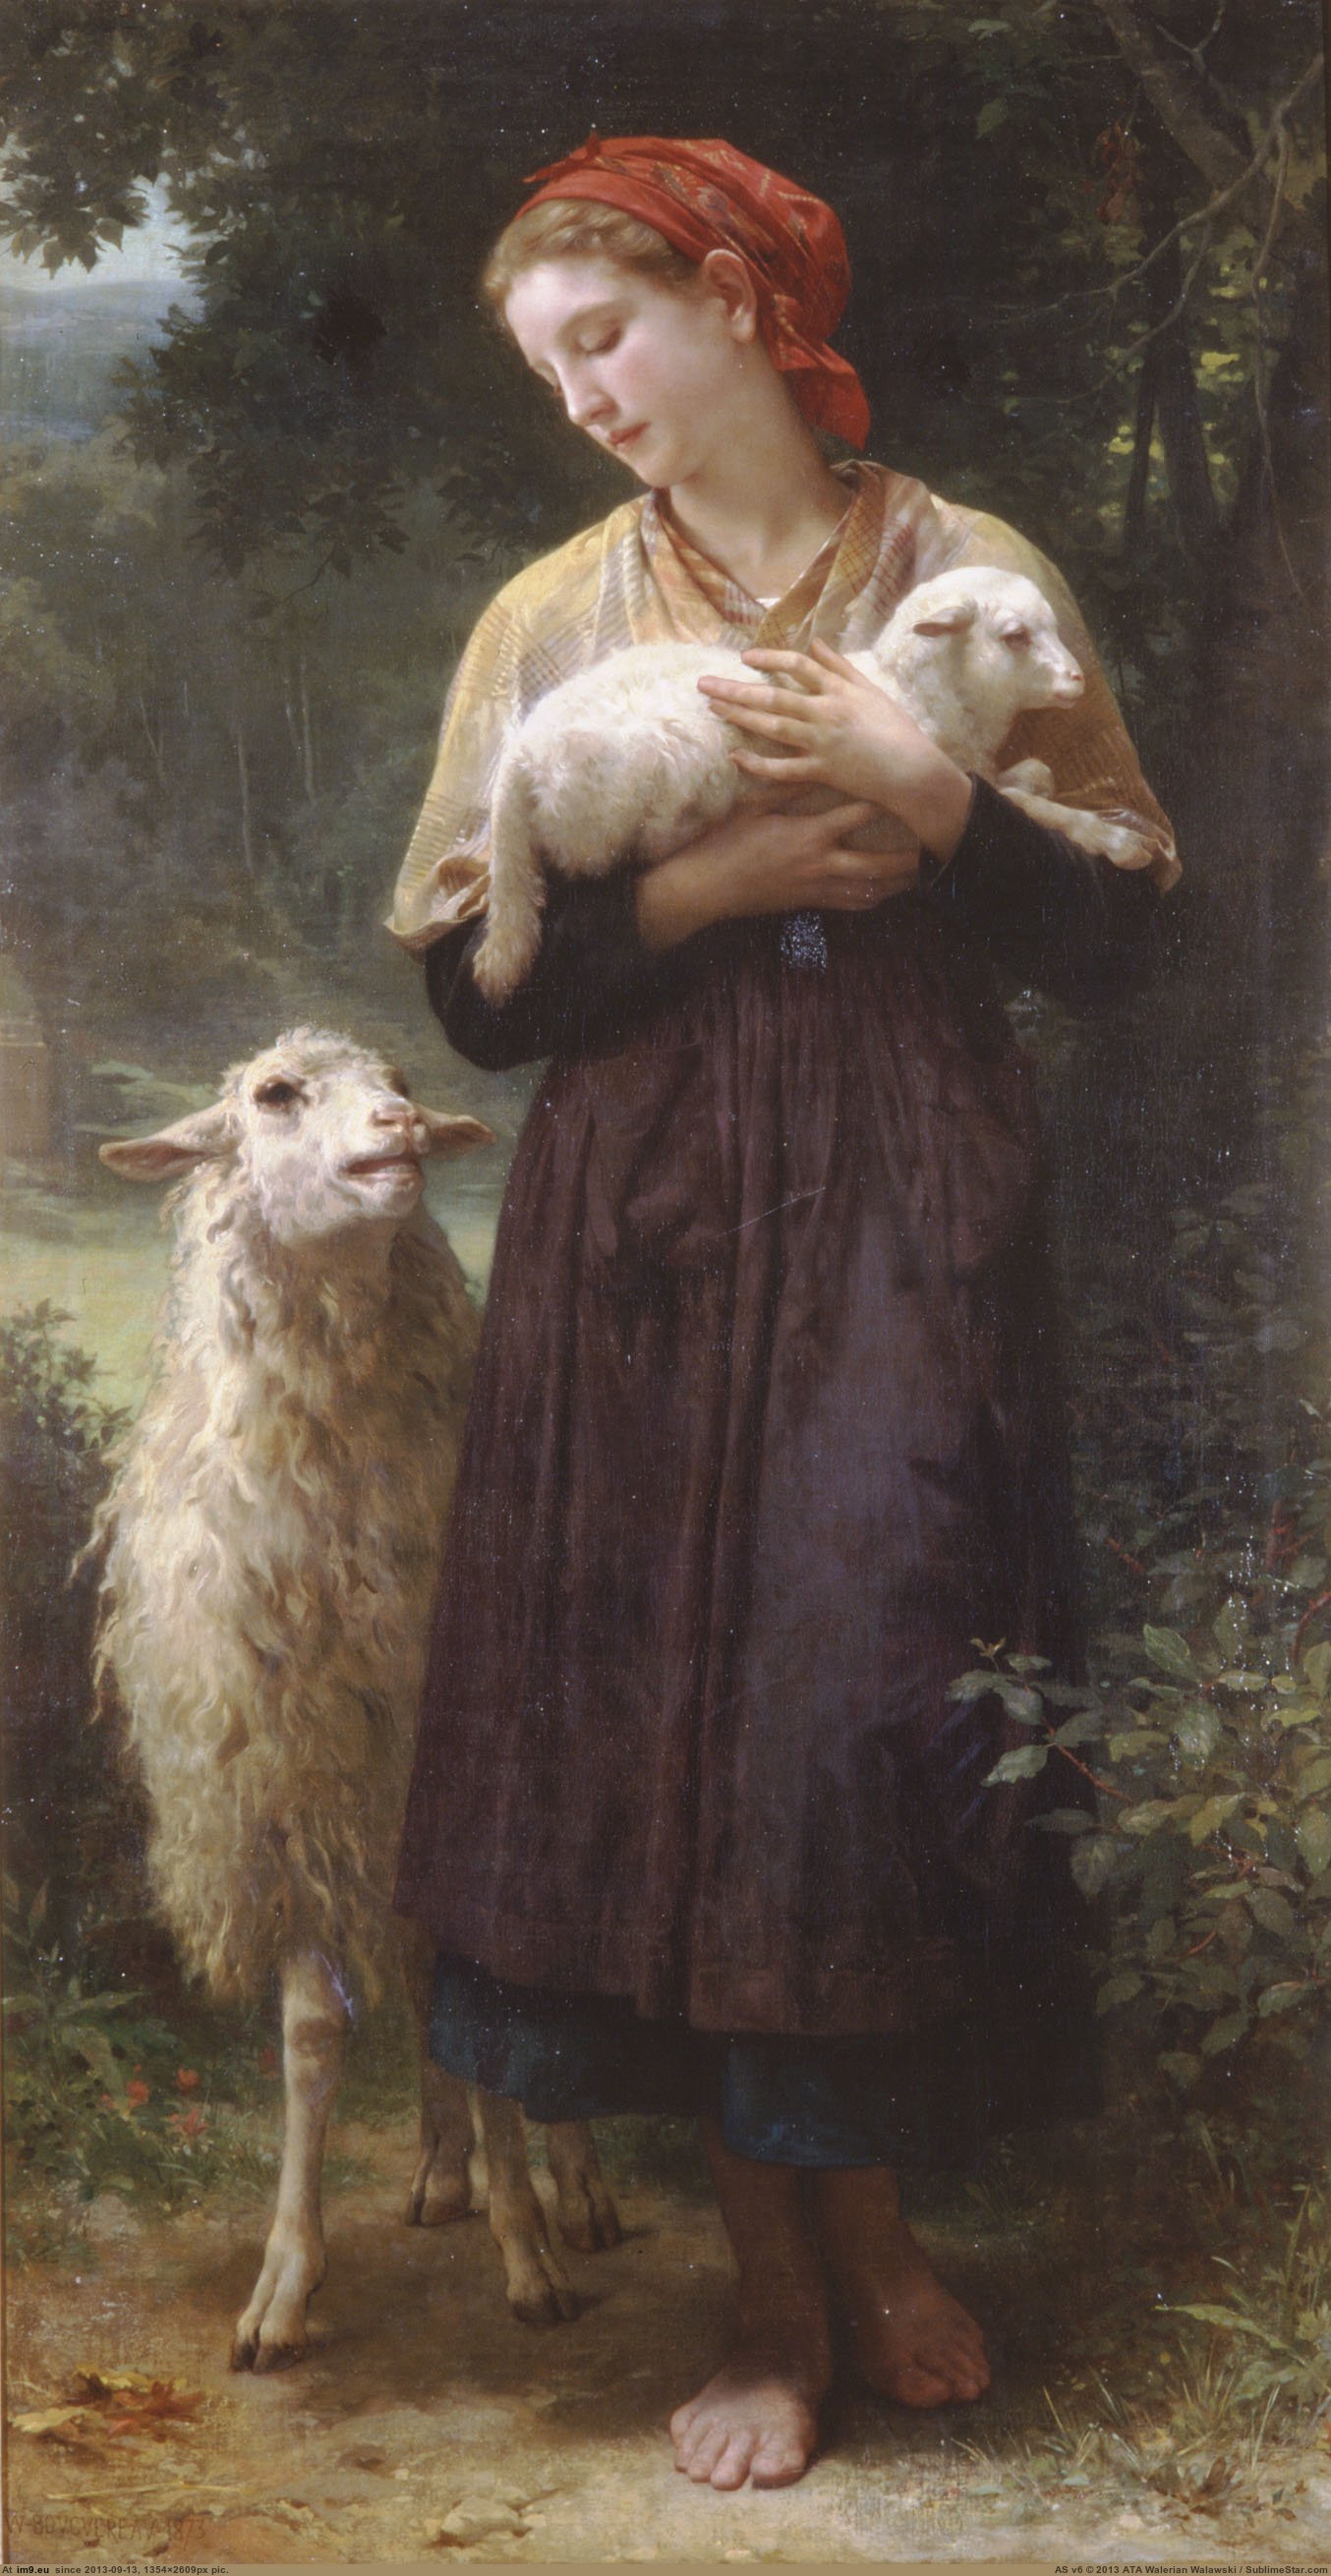 (1873) Lagneau Nouveau - William Adolphe Bouguereau (in William Adolphe Bouguereau paintings (1825-1905))